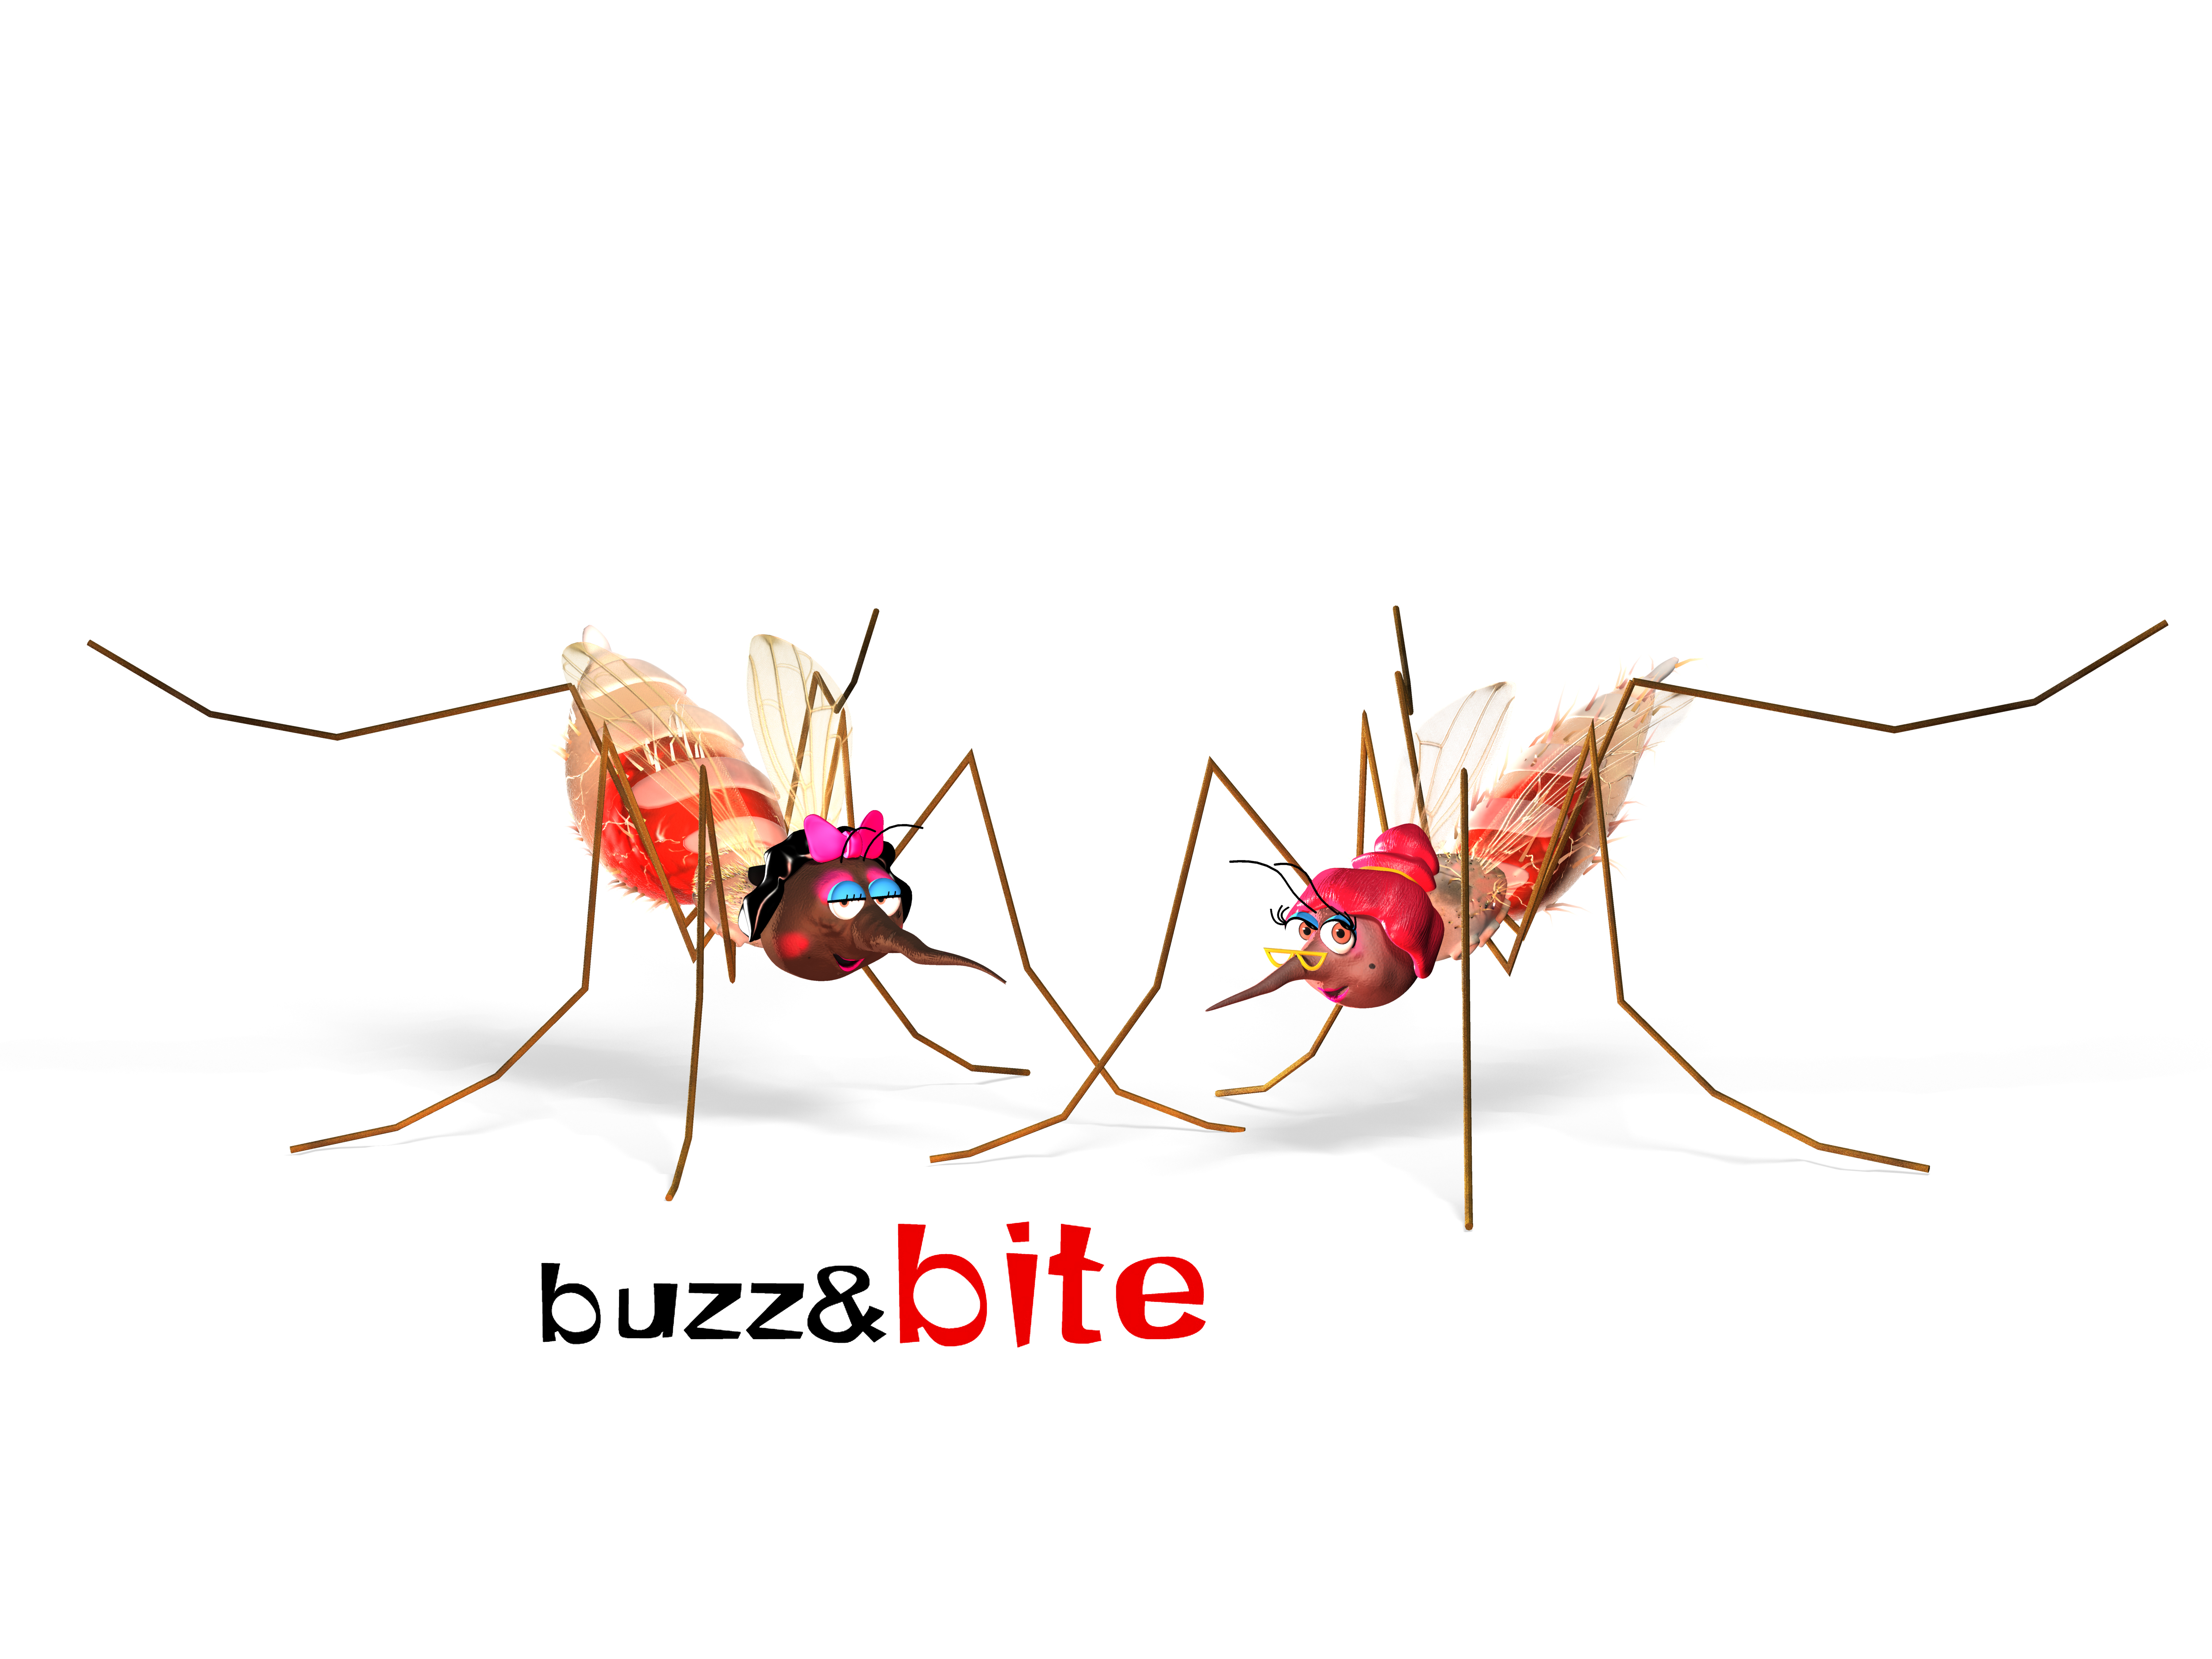 Buzz and Bite malaria prevention campaign